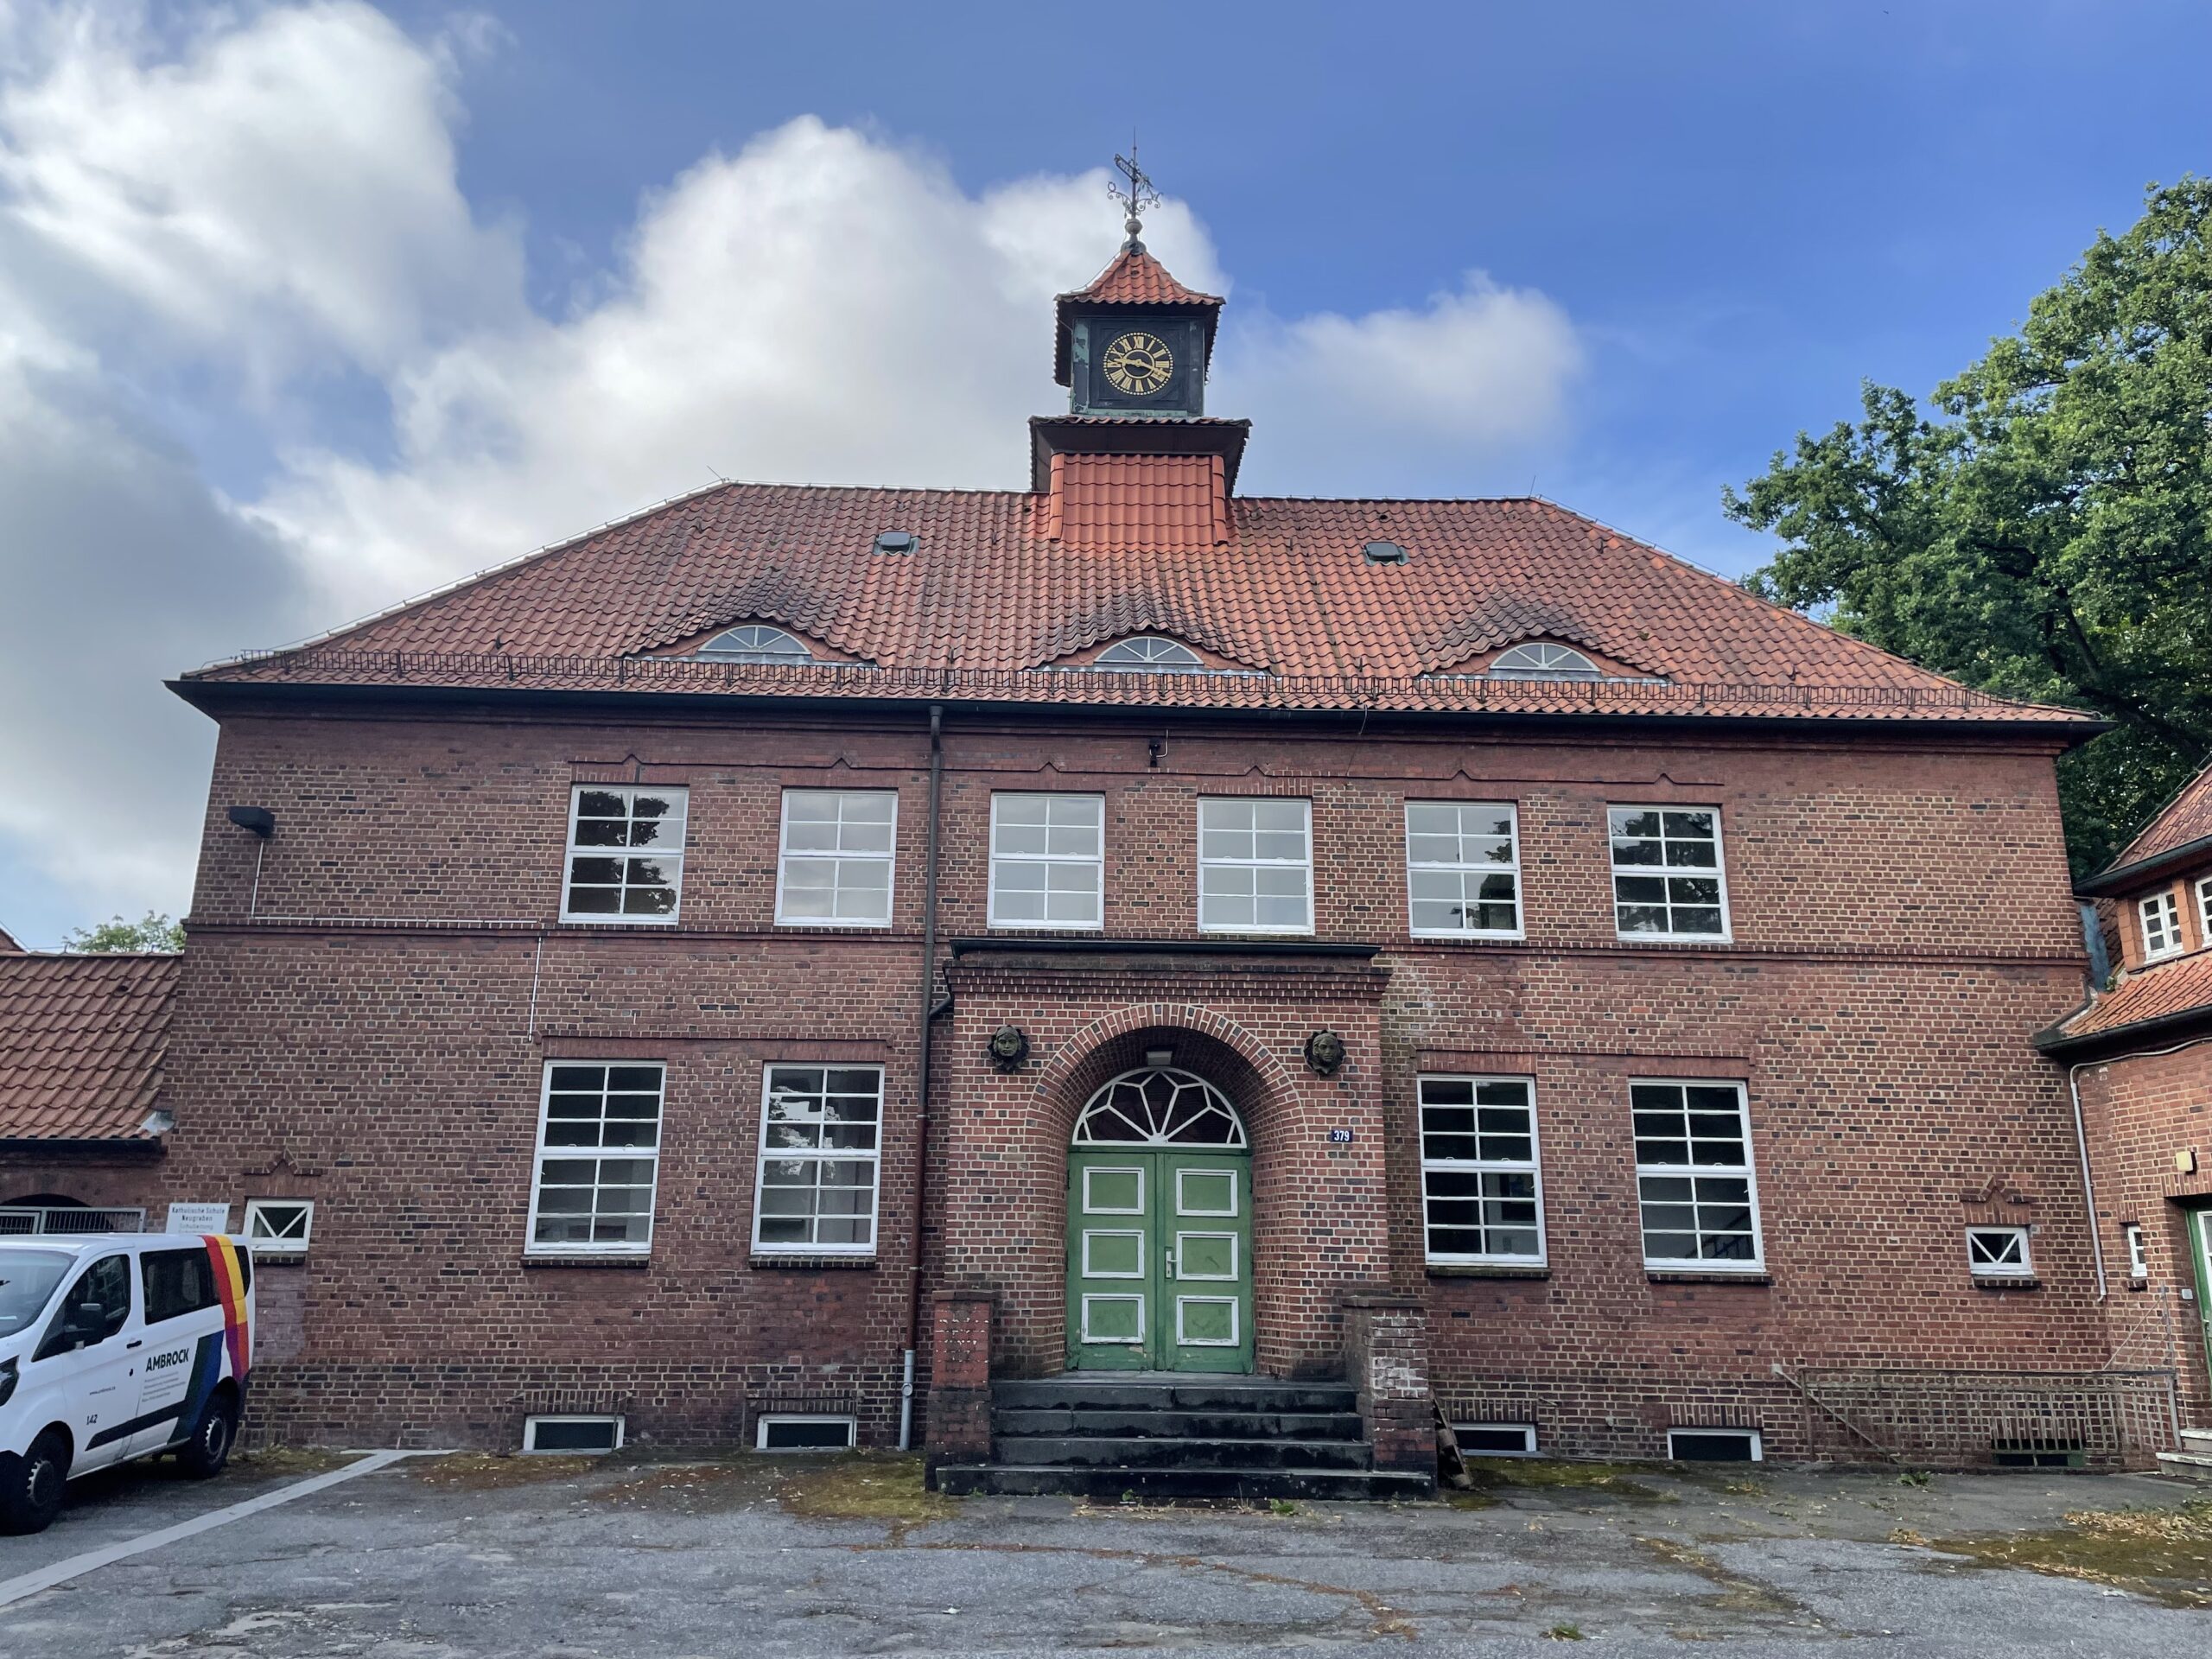 Die Katholische Schule Neugraben gehört nach 15 Jahren offenbar wieder der Stadt Hamburg. Dort sollen drei neue Schulen entstehen.